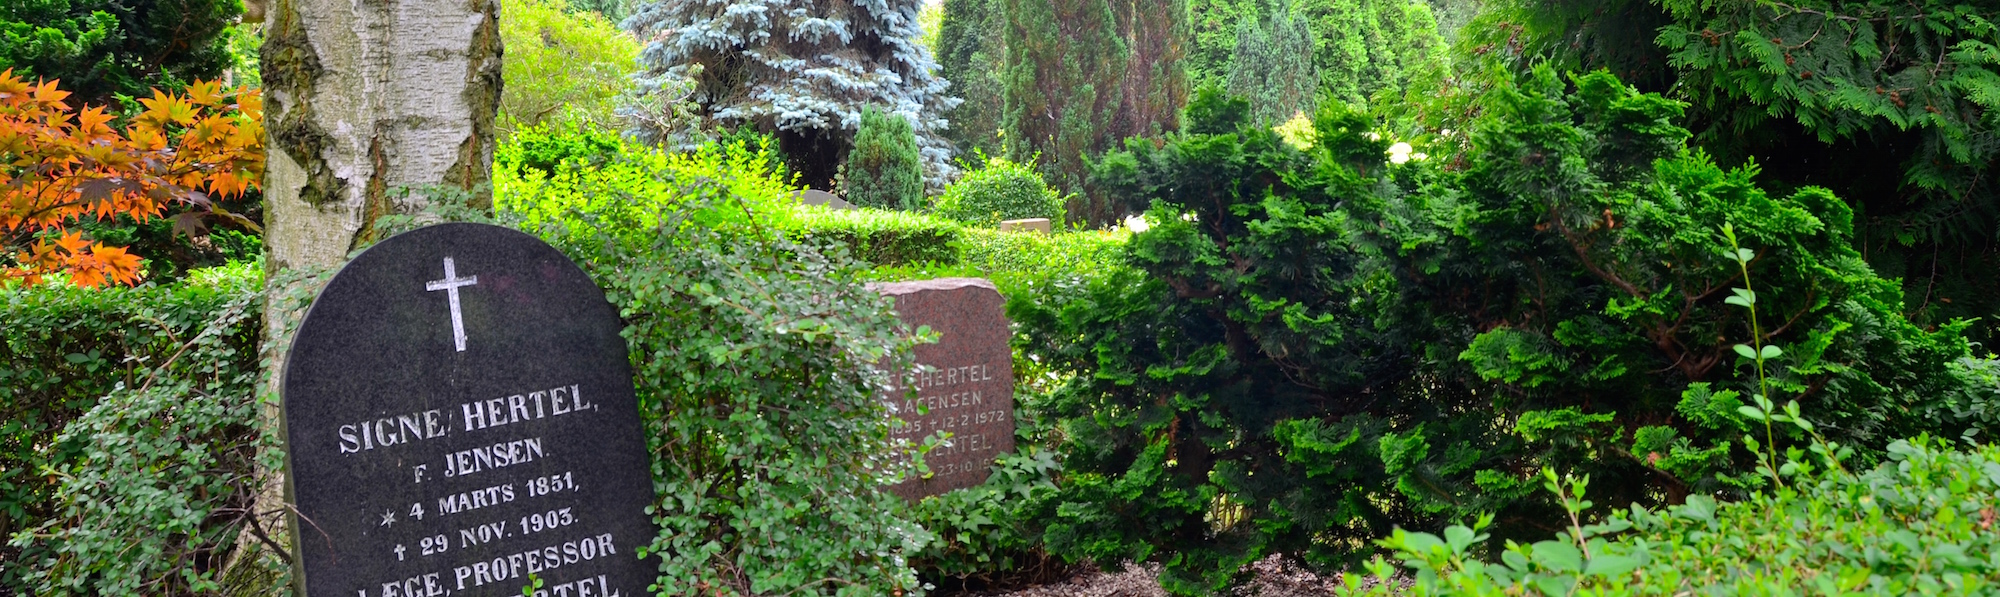 Cementerio de Assistens, Compenhague